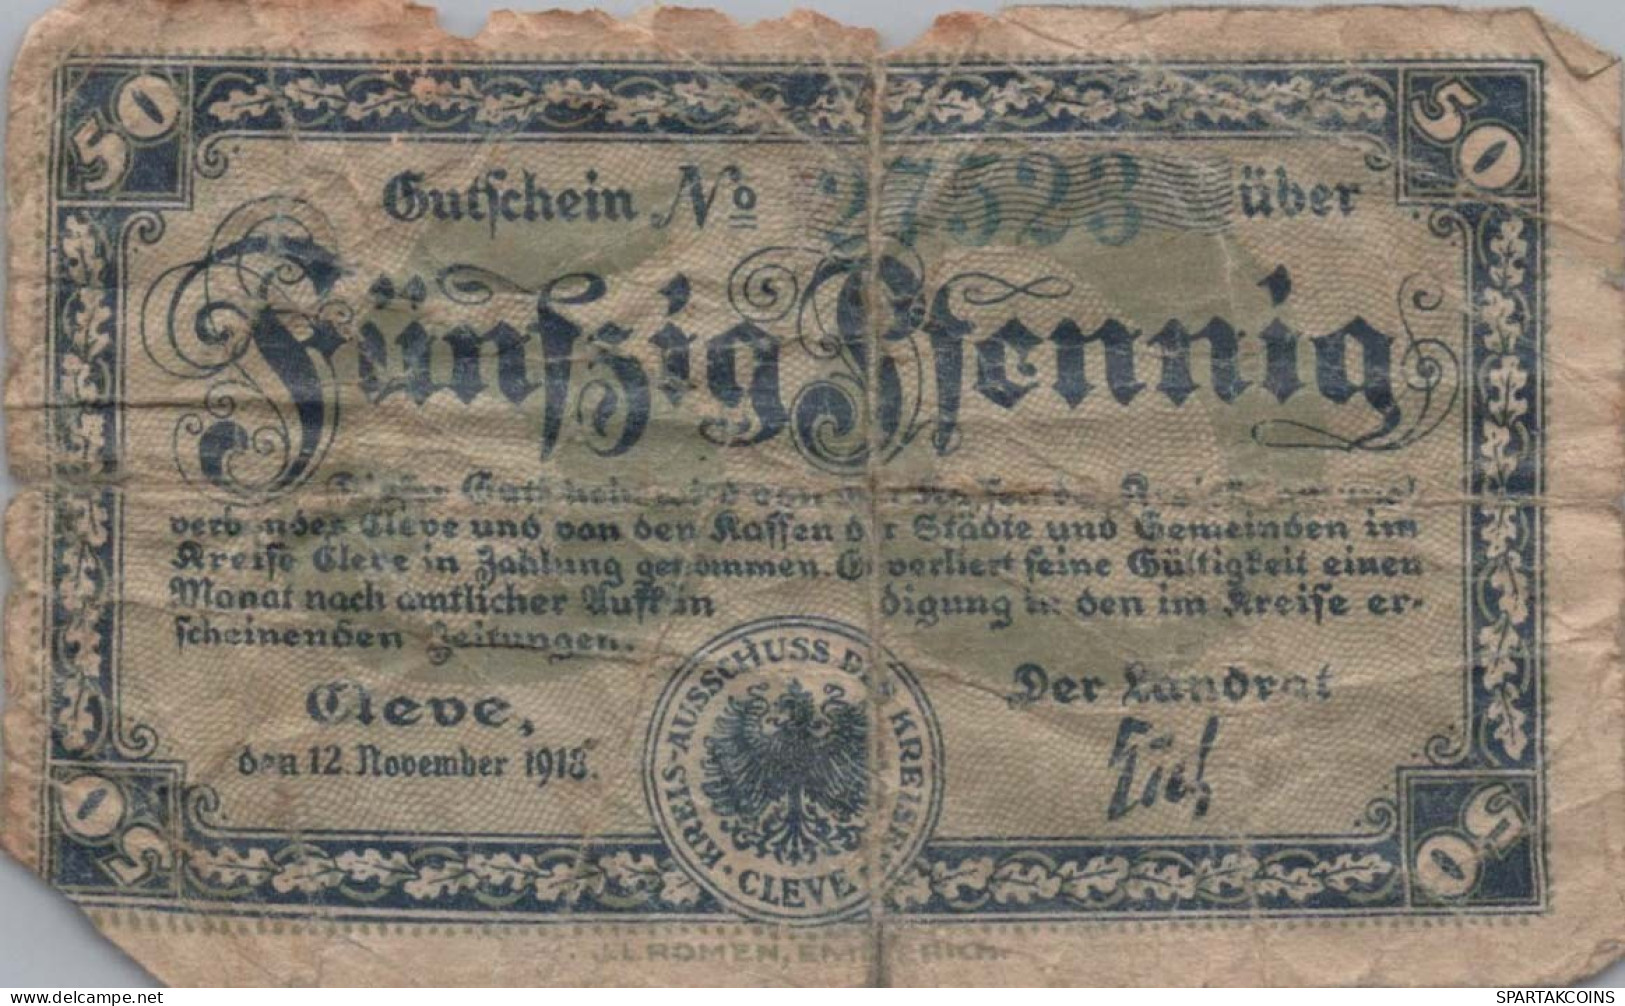 50 PFENNIG 1918 Stadt RHINE Rhine DEUTSCHLAND Notgeld Banknote #PG448 - [11] Emissions Locales